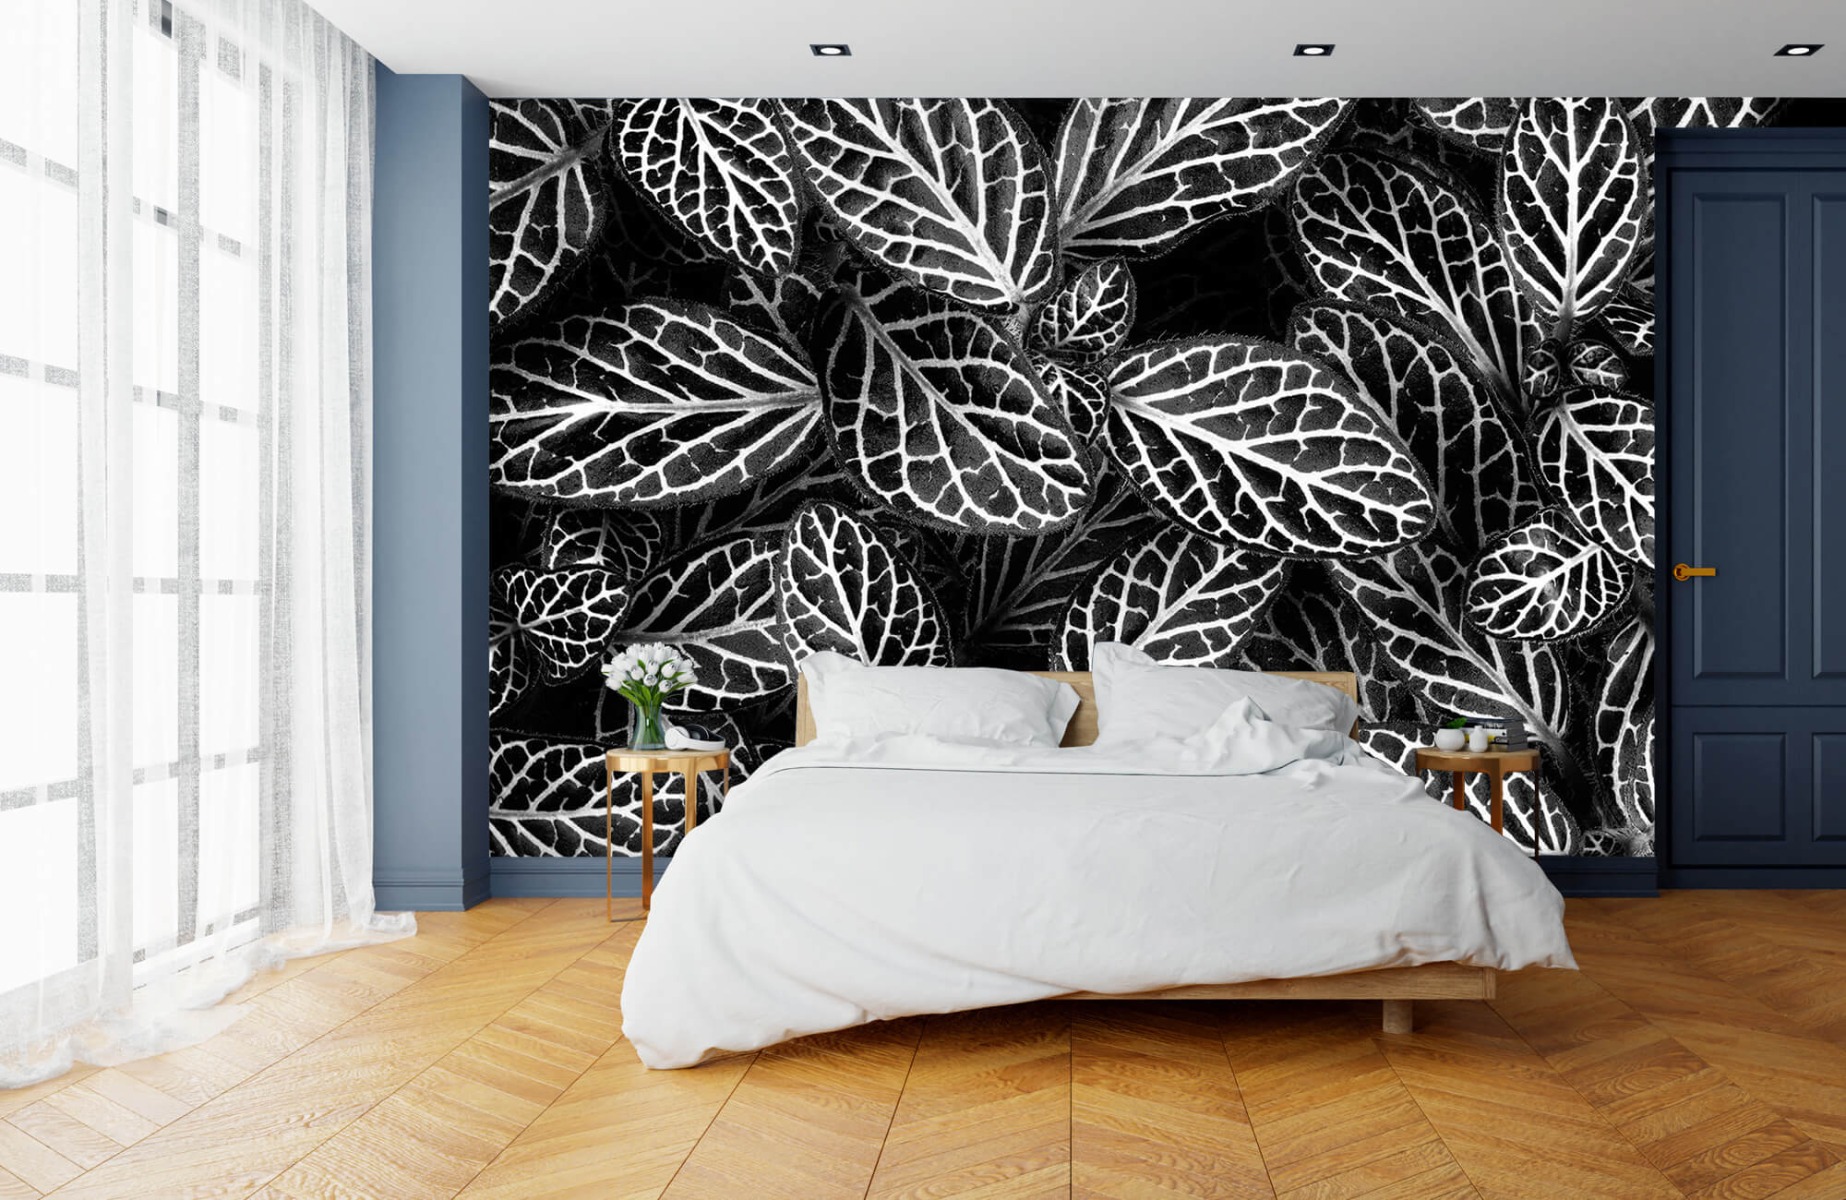 Blanco y negro - Papel pintado con Fittonia - Sala de reuniones 14